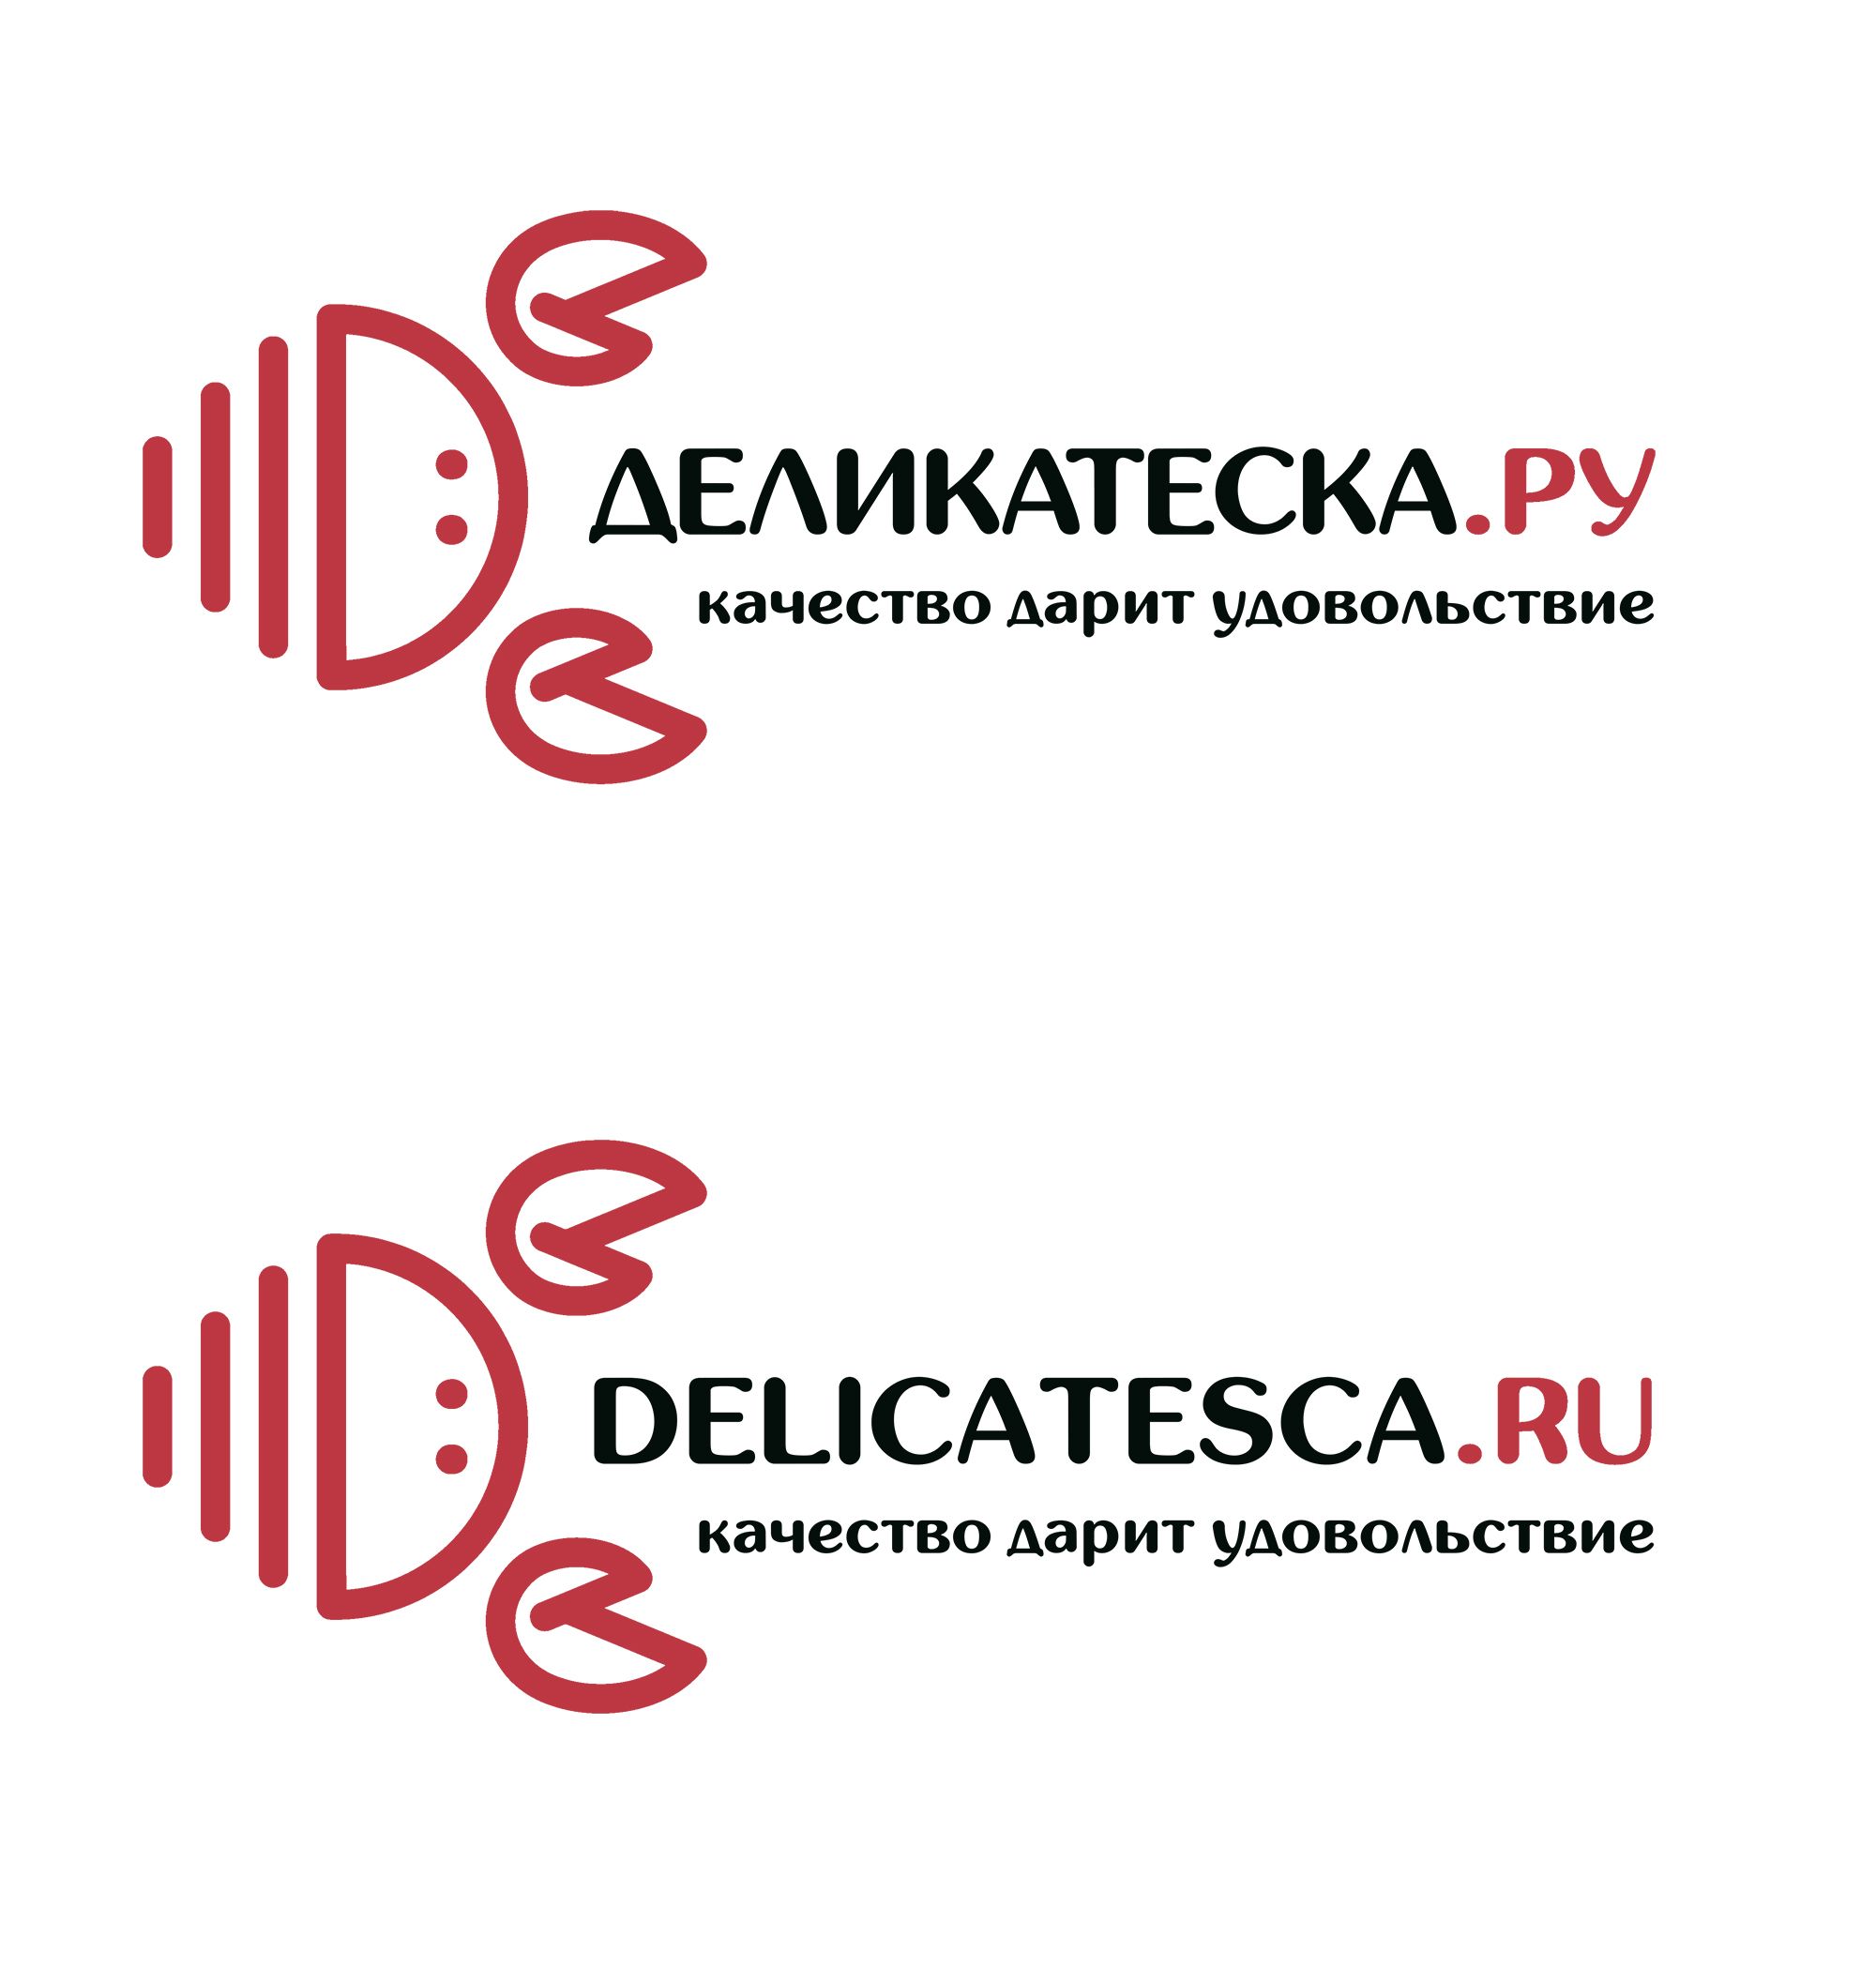 Логотип для ДЕЛИКАТЕСКА.РУ - дизайнер cfcfan78